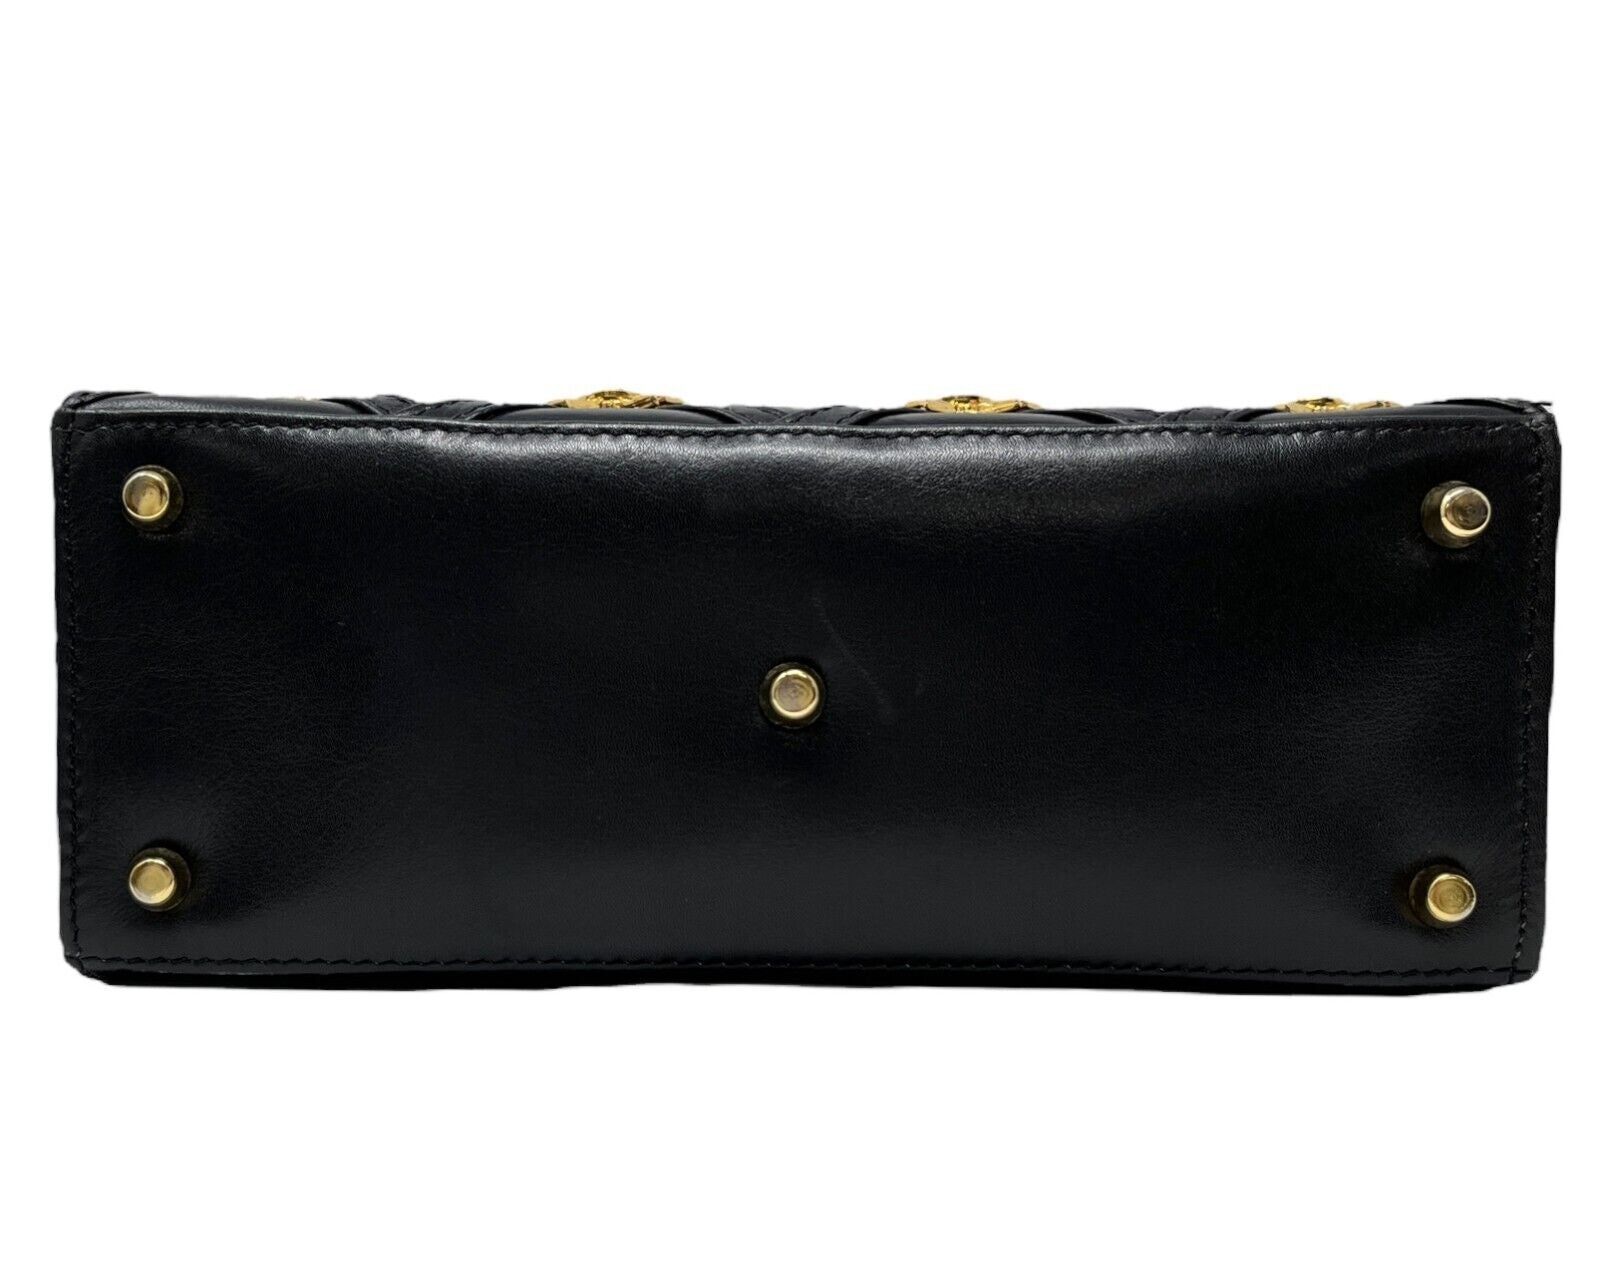 GIANNI VERSACE Vintage Medusa Logo Shoulder Bag Black Gold Leather Rank AB